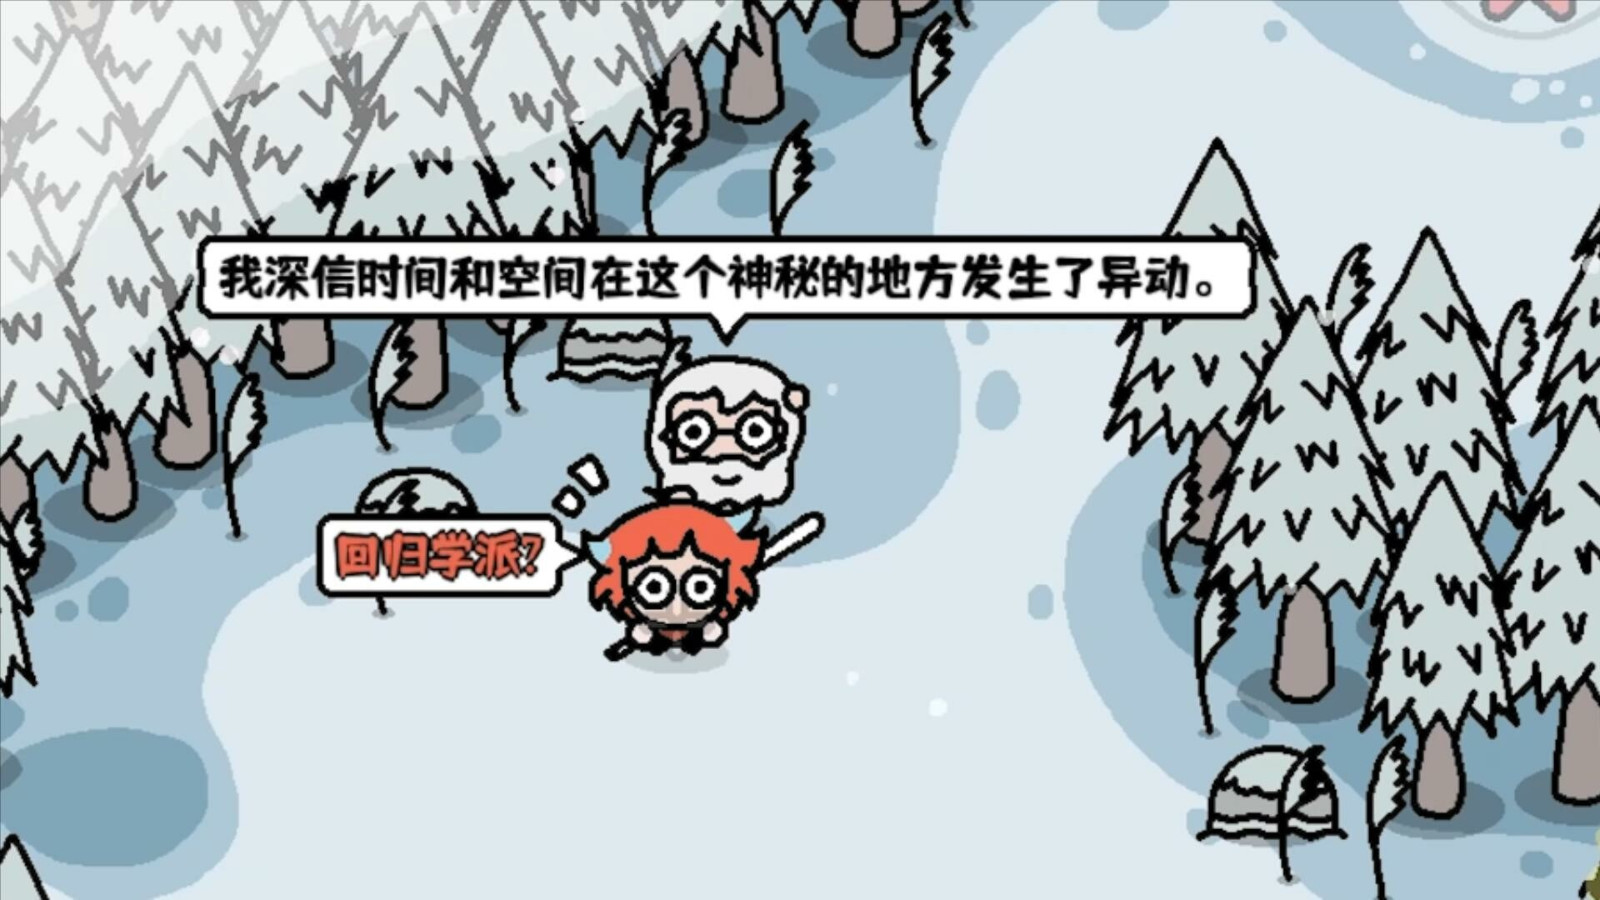 《超级滑刃战士》Steam页面上线 支持简体中文